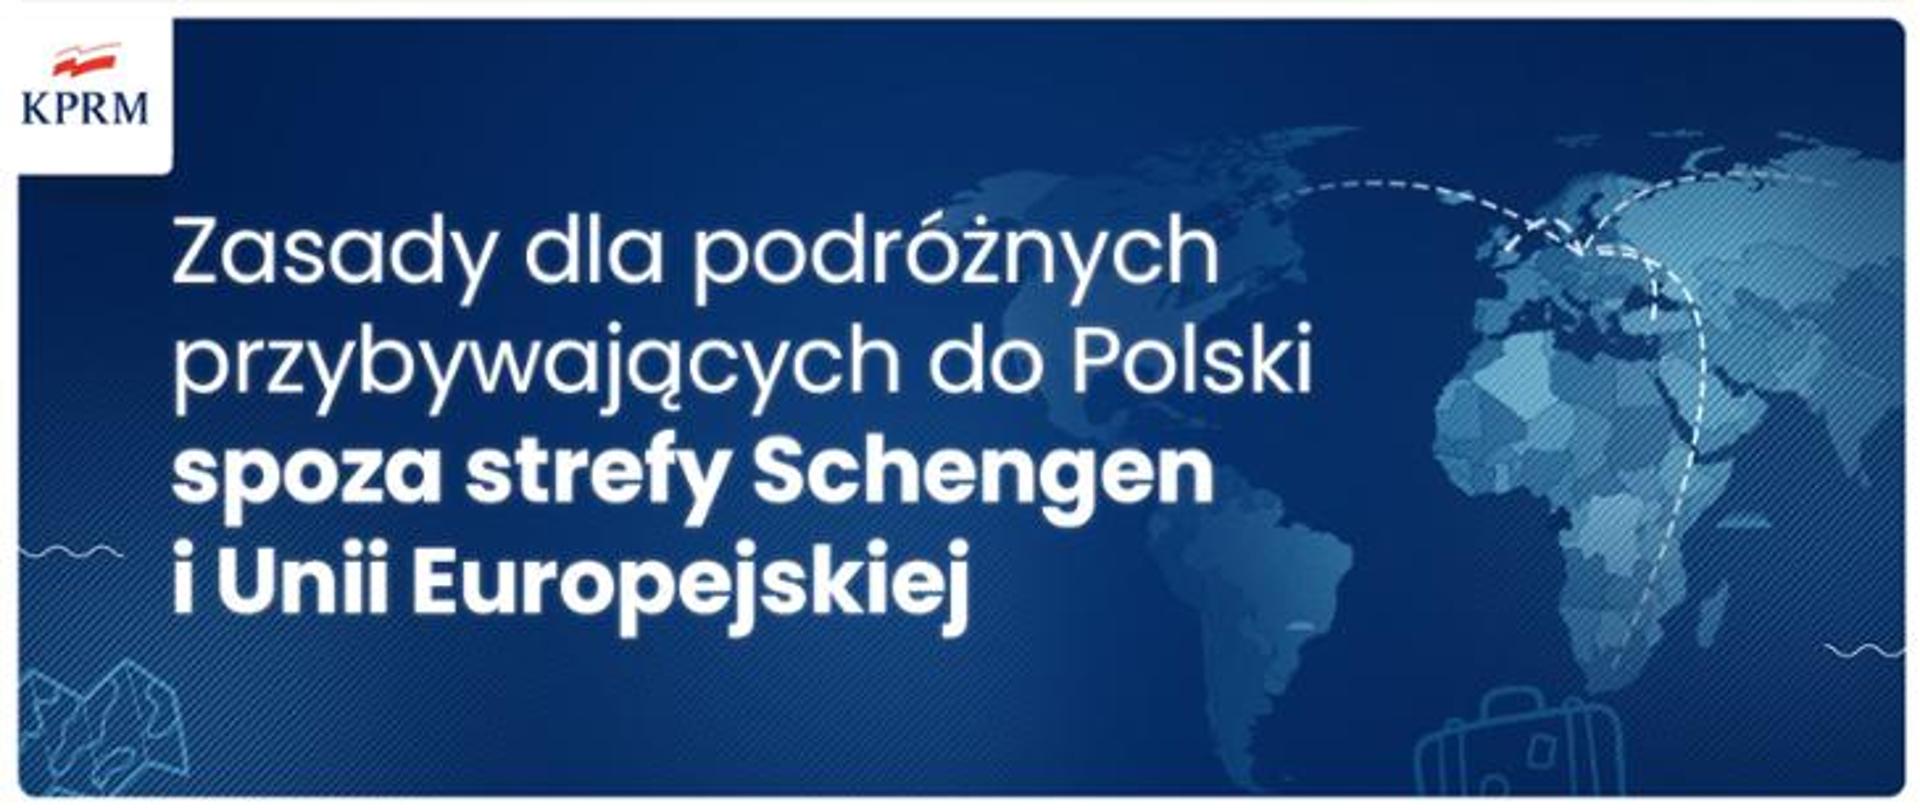 Przyjazd_do_Polski